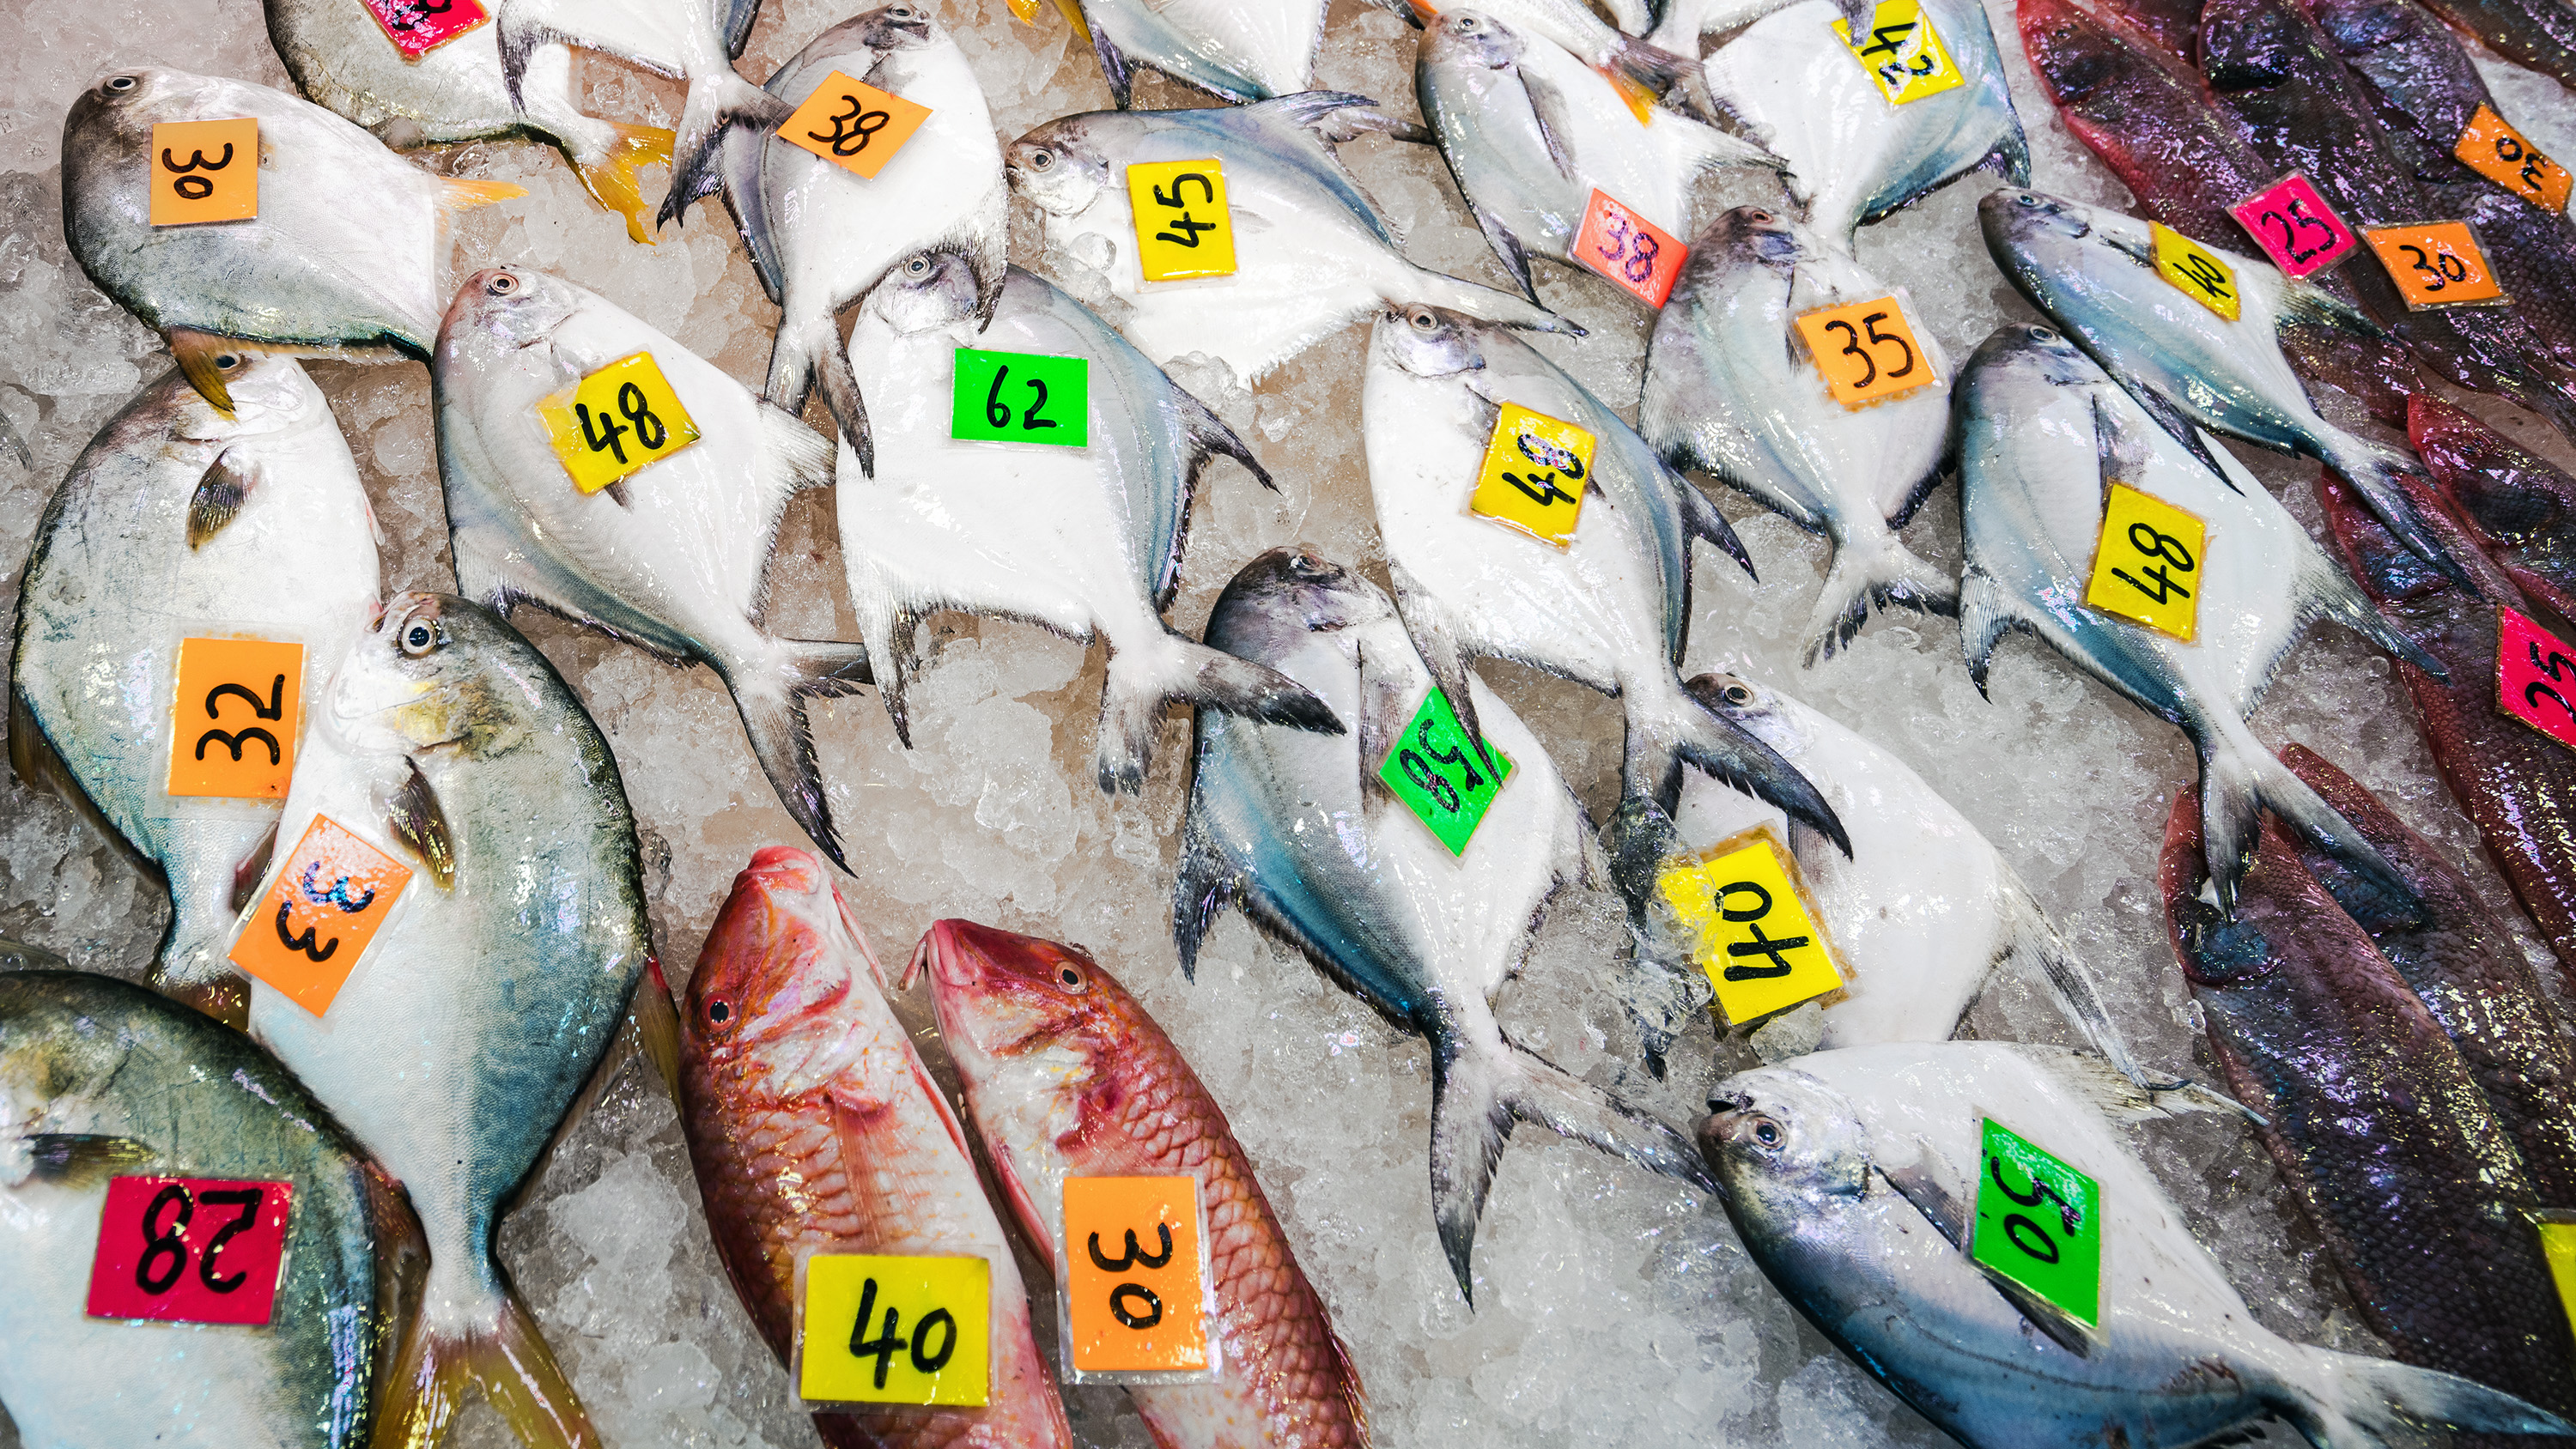 våtmarknad som säljer fisk